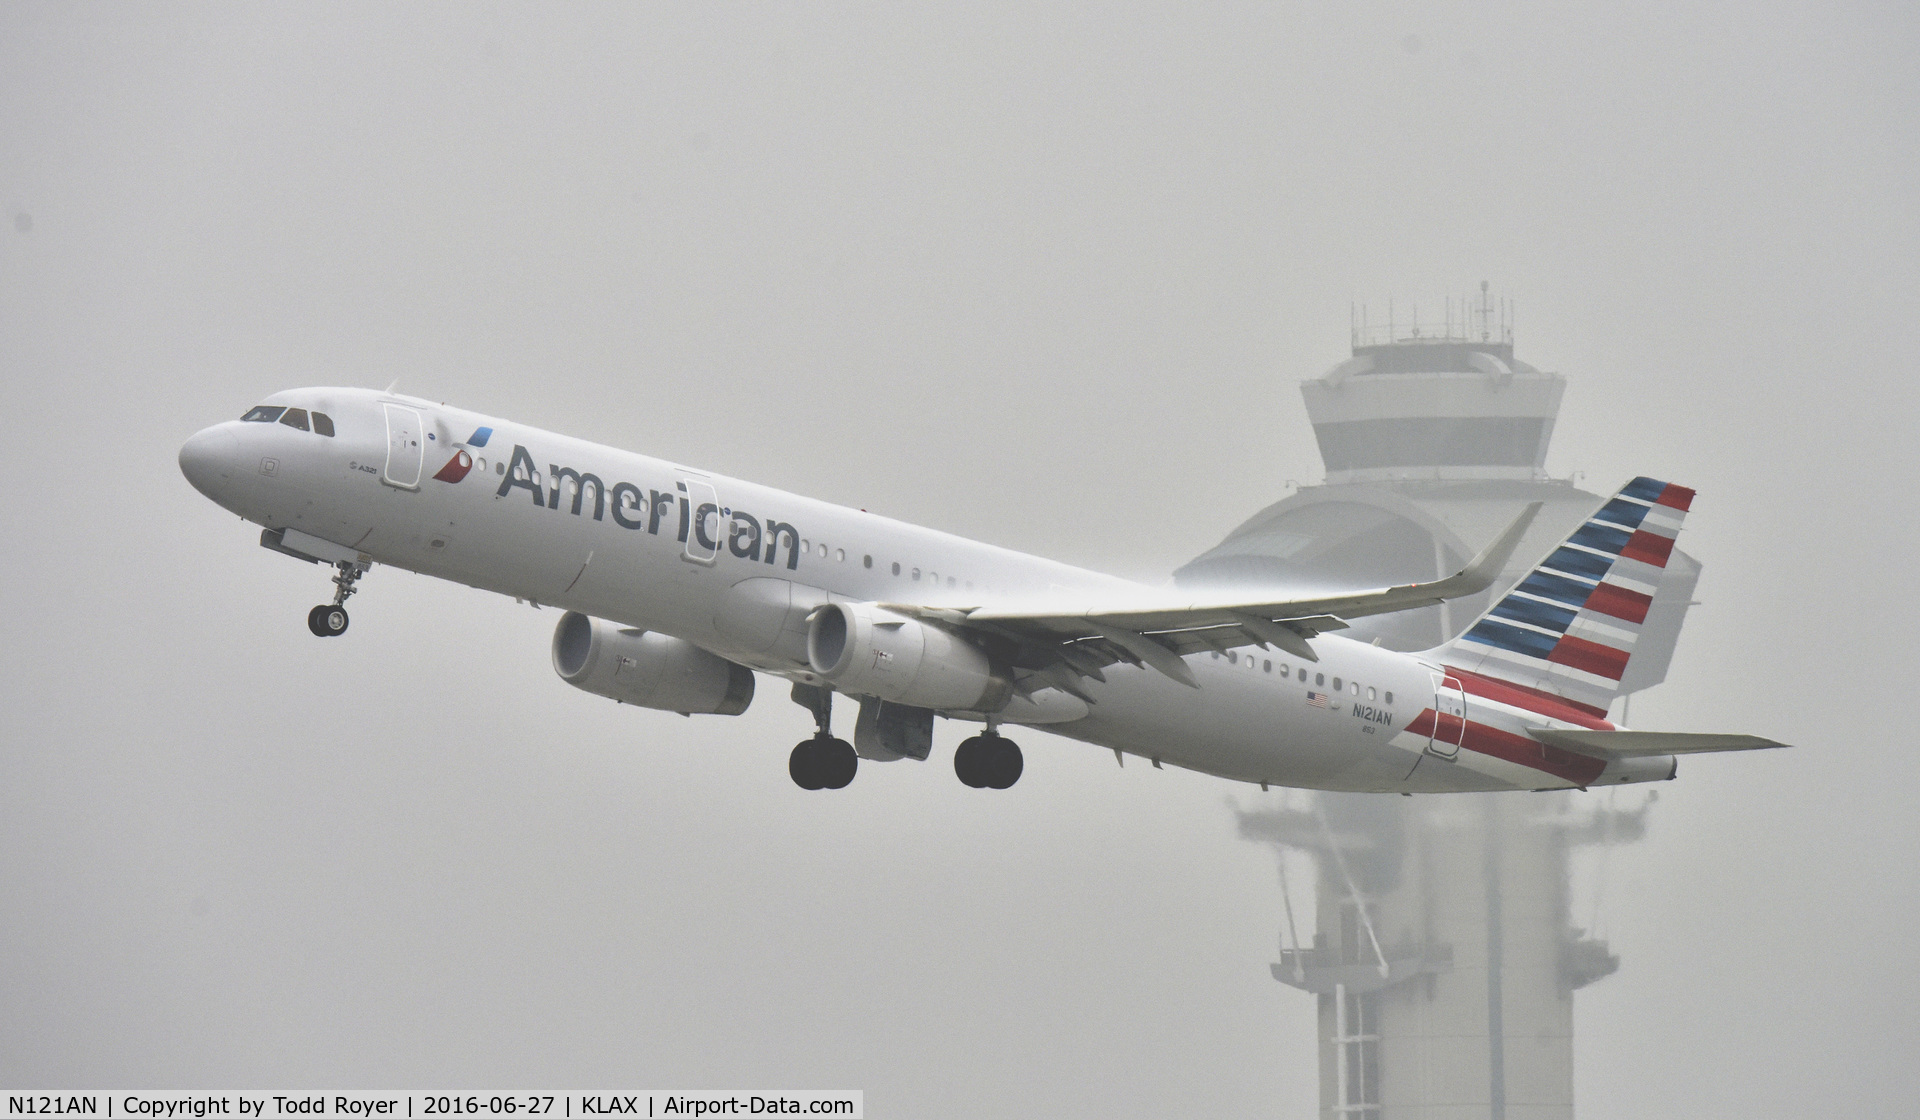 N121AN, 2014 Airbus A321-231 C/N 6238, Departing LAX